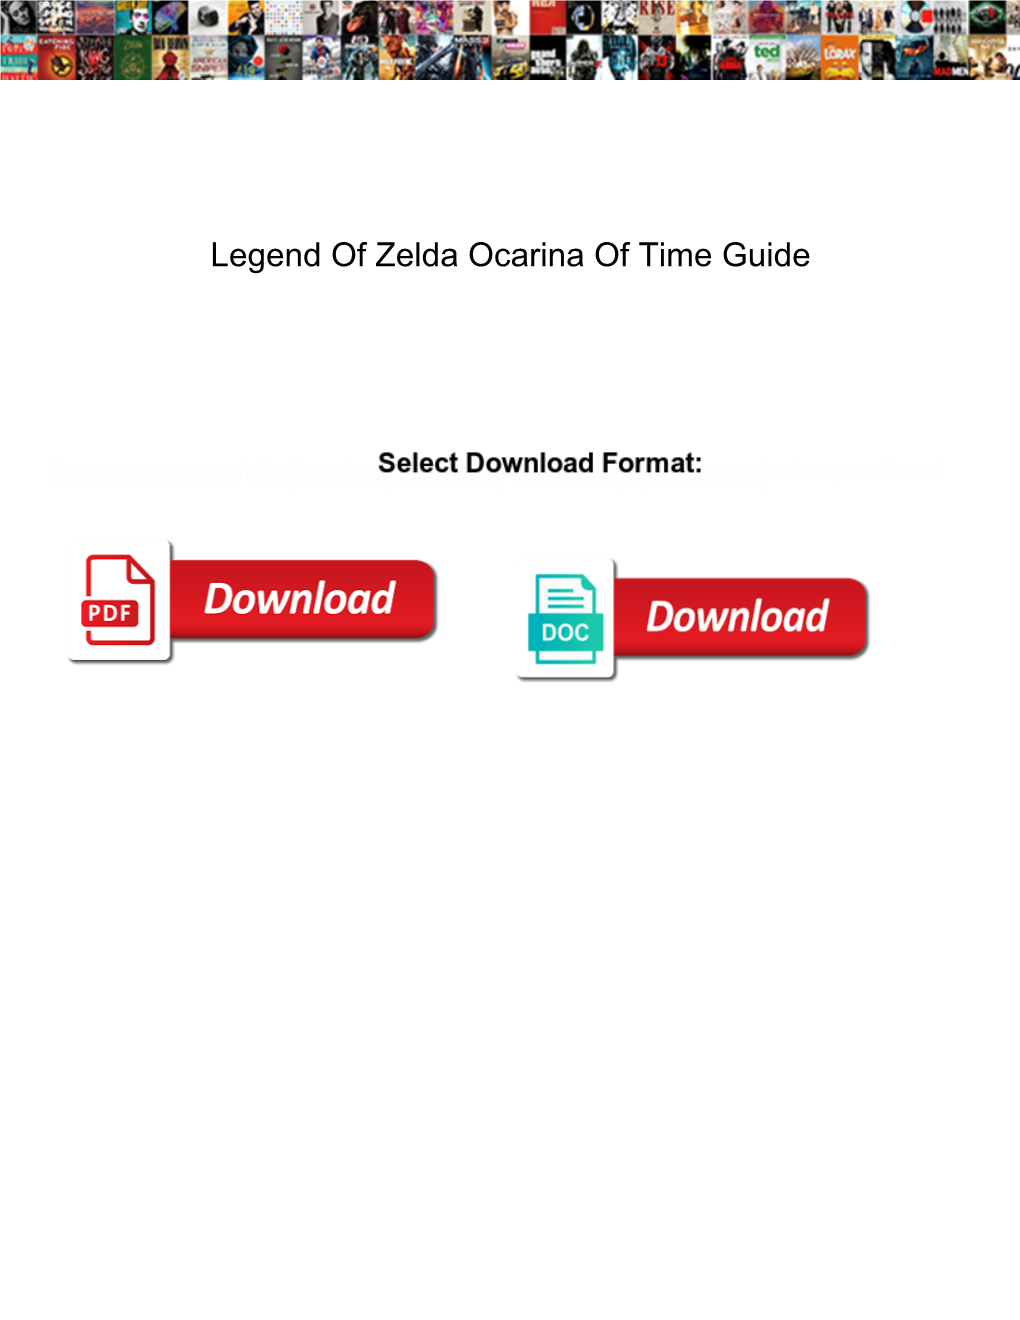 Legend of Zelda Ocarina of Time Guide